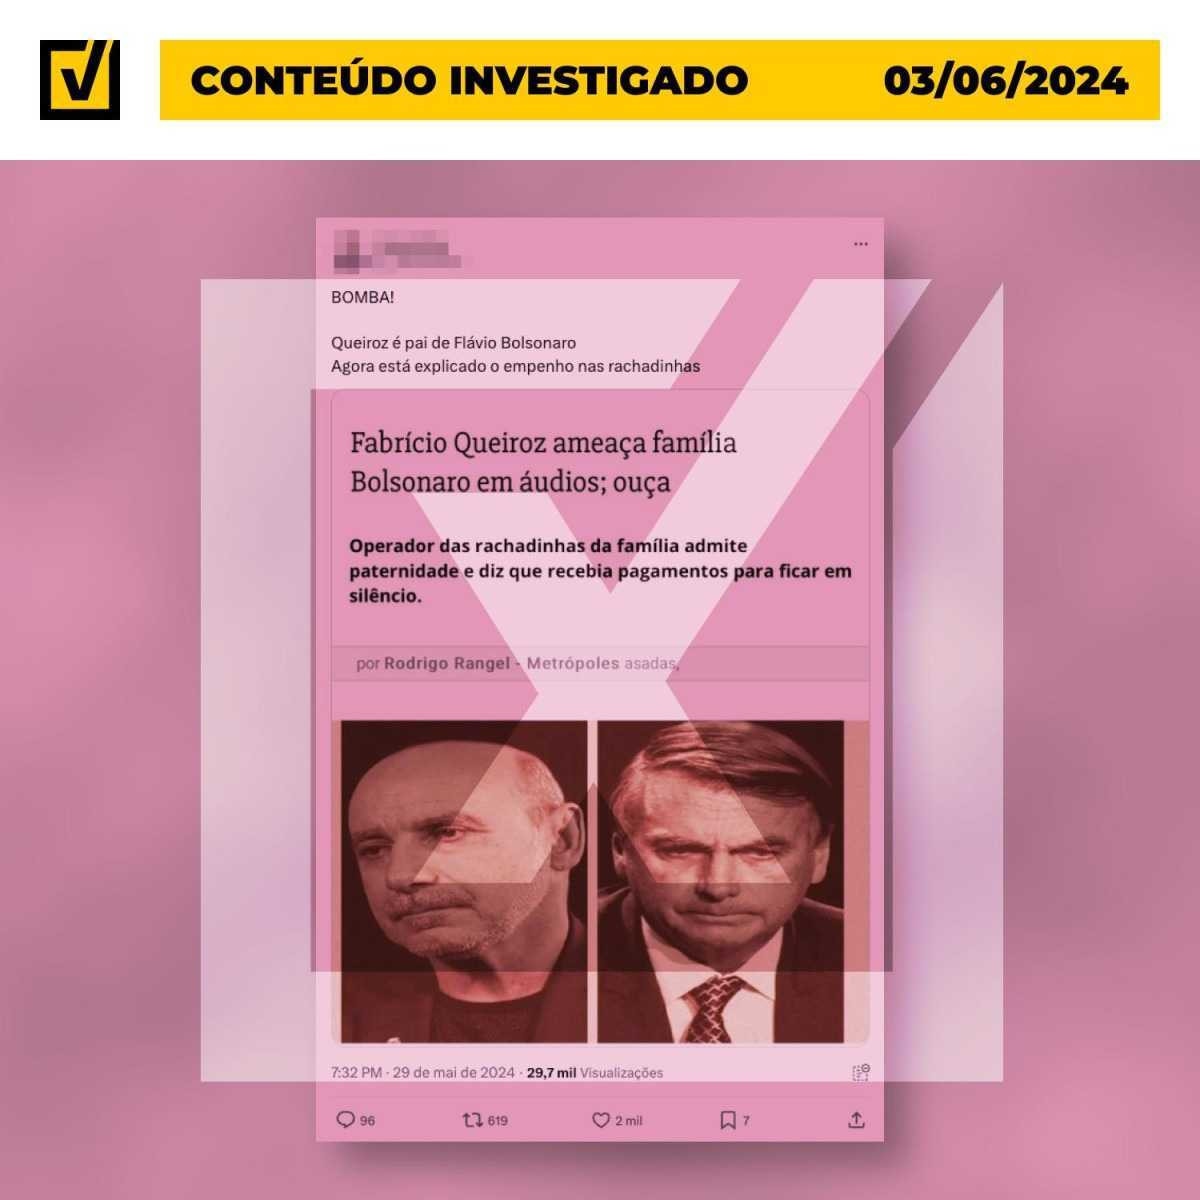 Reportagem não disse que Queiroz é pai de Flávio Bolsonaro